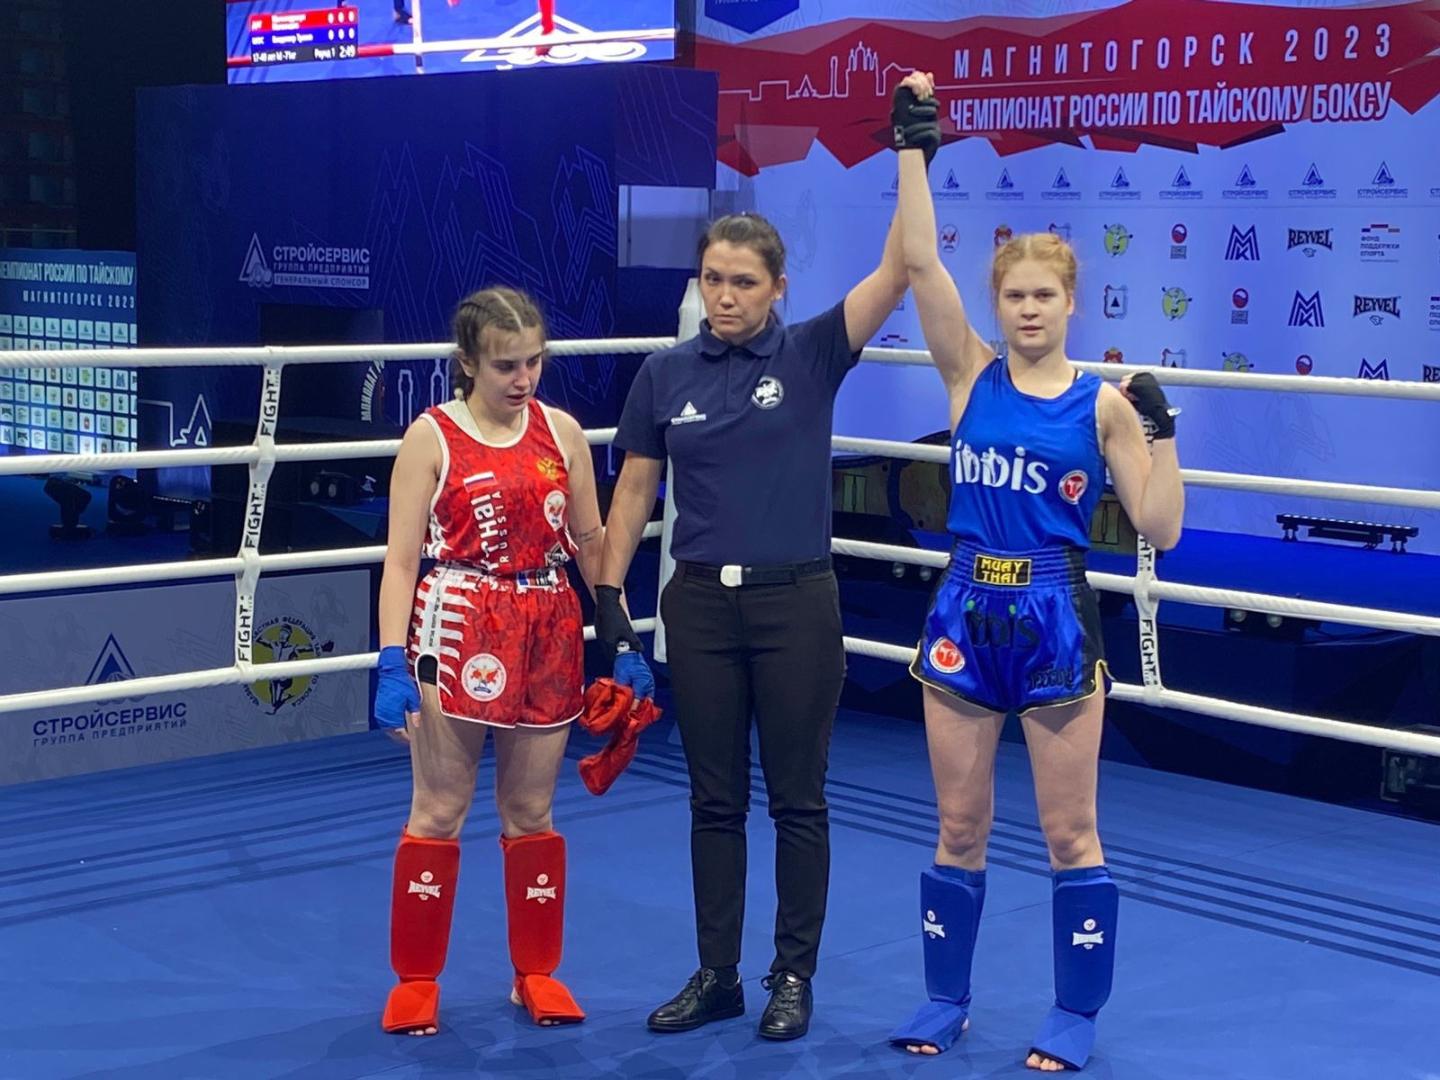 Гатчинская спортсменка завоевала серебро на чемпионате России по тайскому боксу